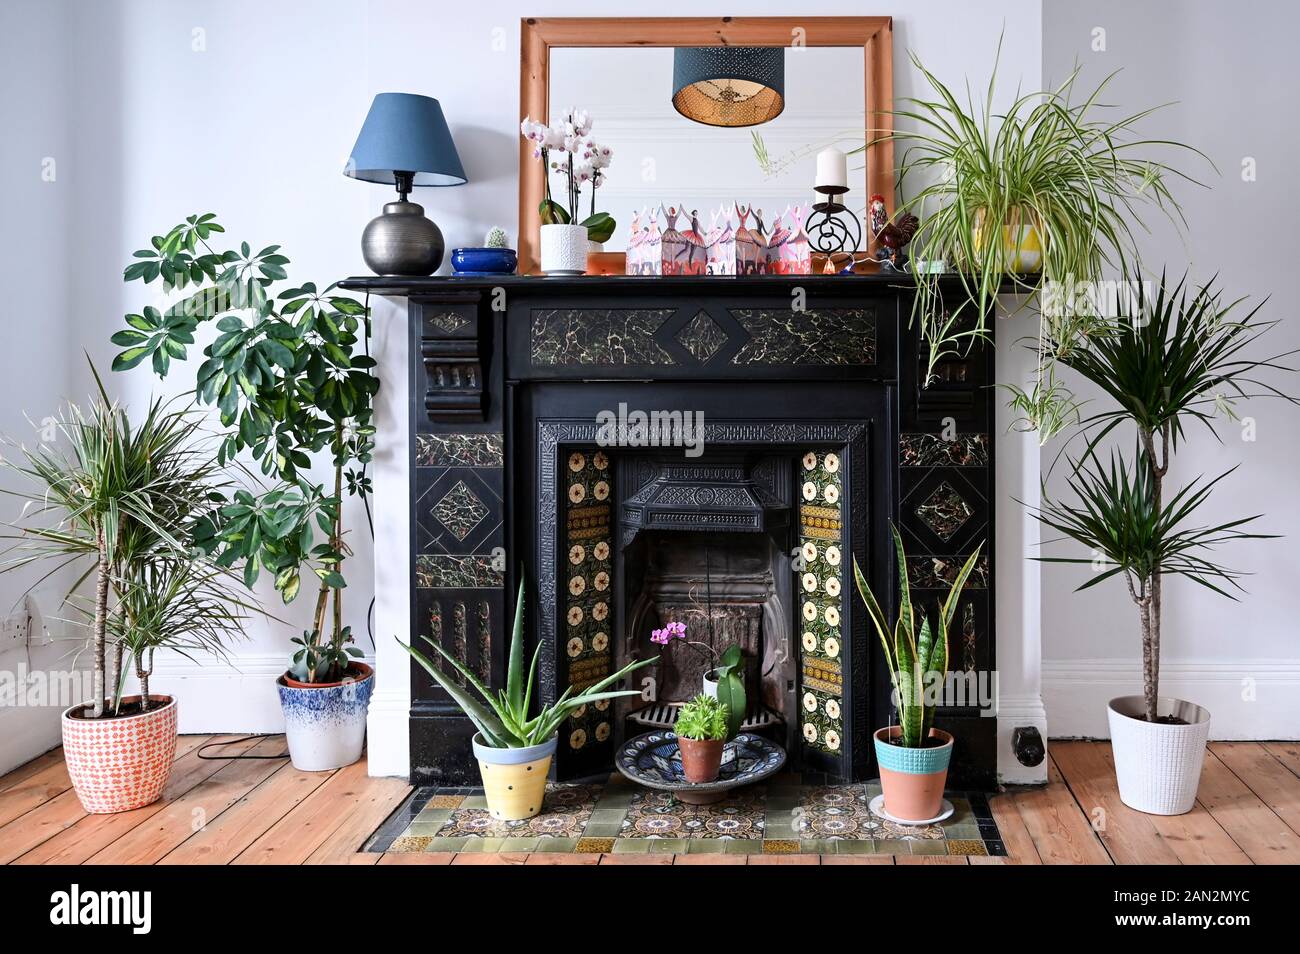 Auténticos interiores domésticos con chimenea de azulejo victoriana rodeada por una selección de plantas de interior en macetas sanas y verdes. Foto de stock